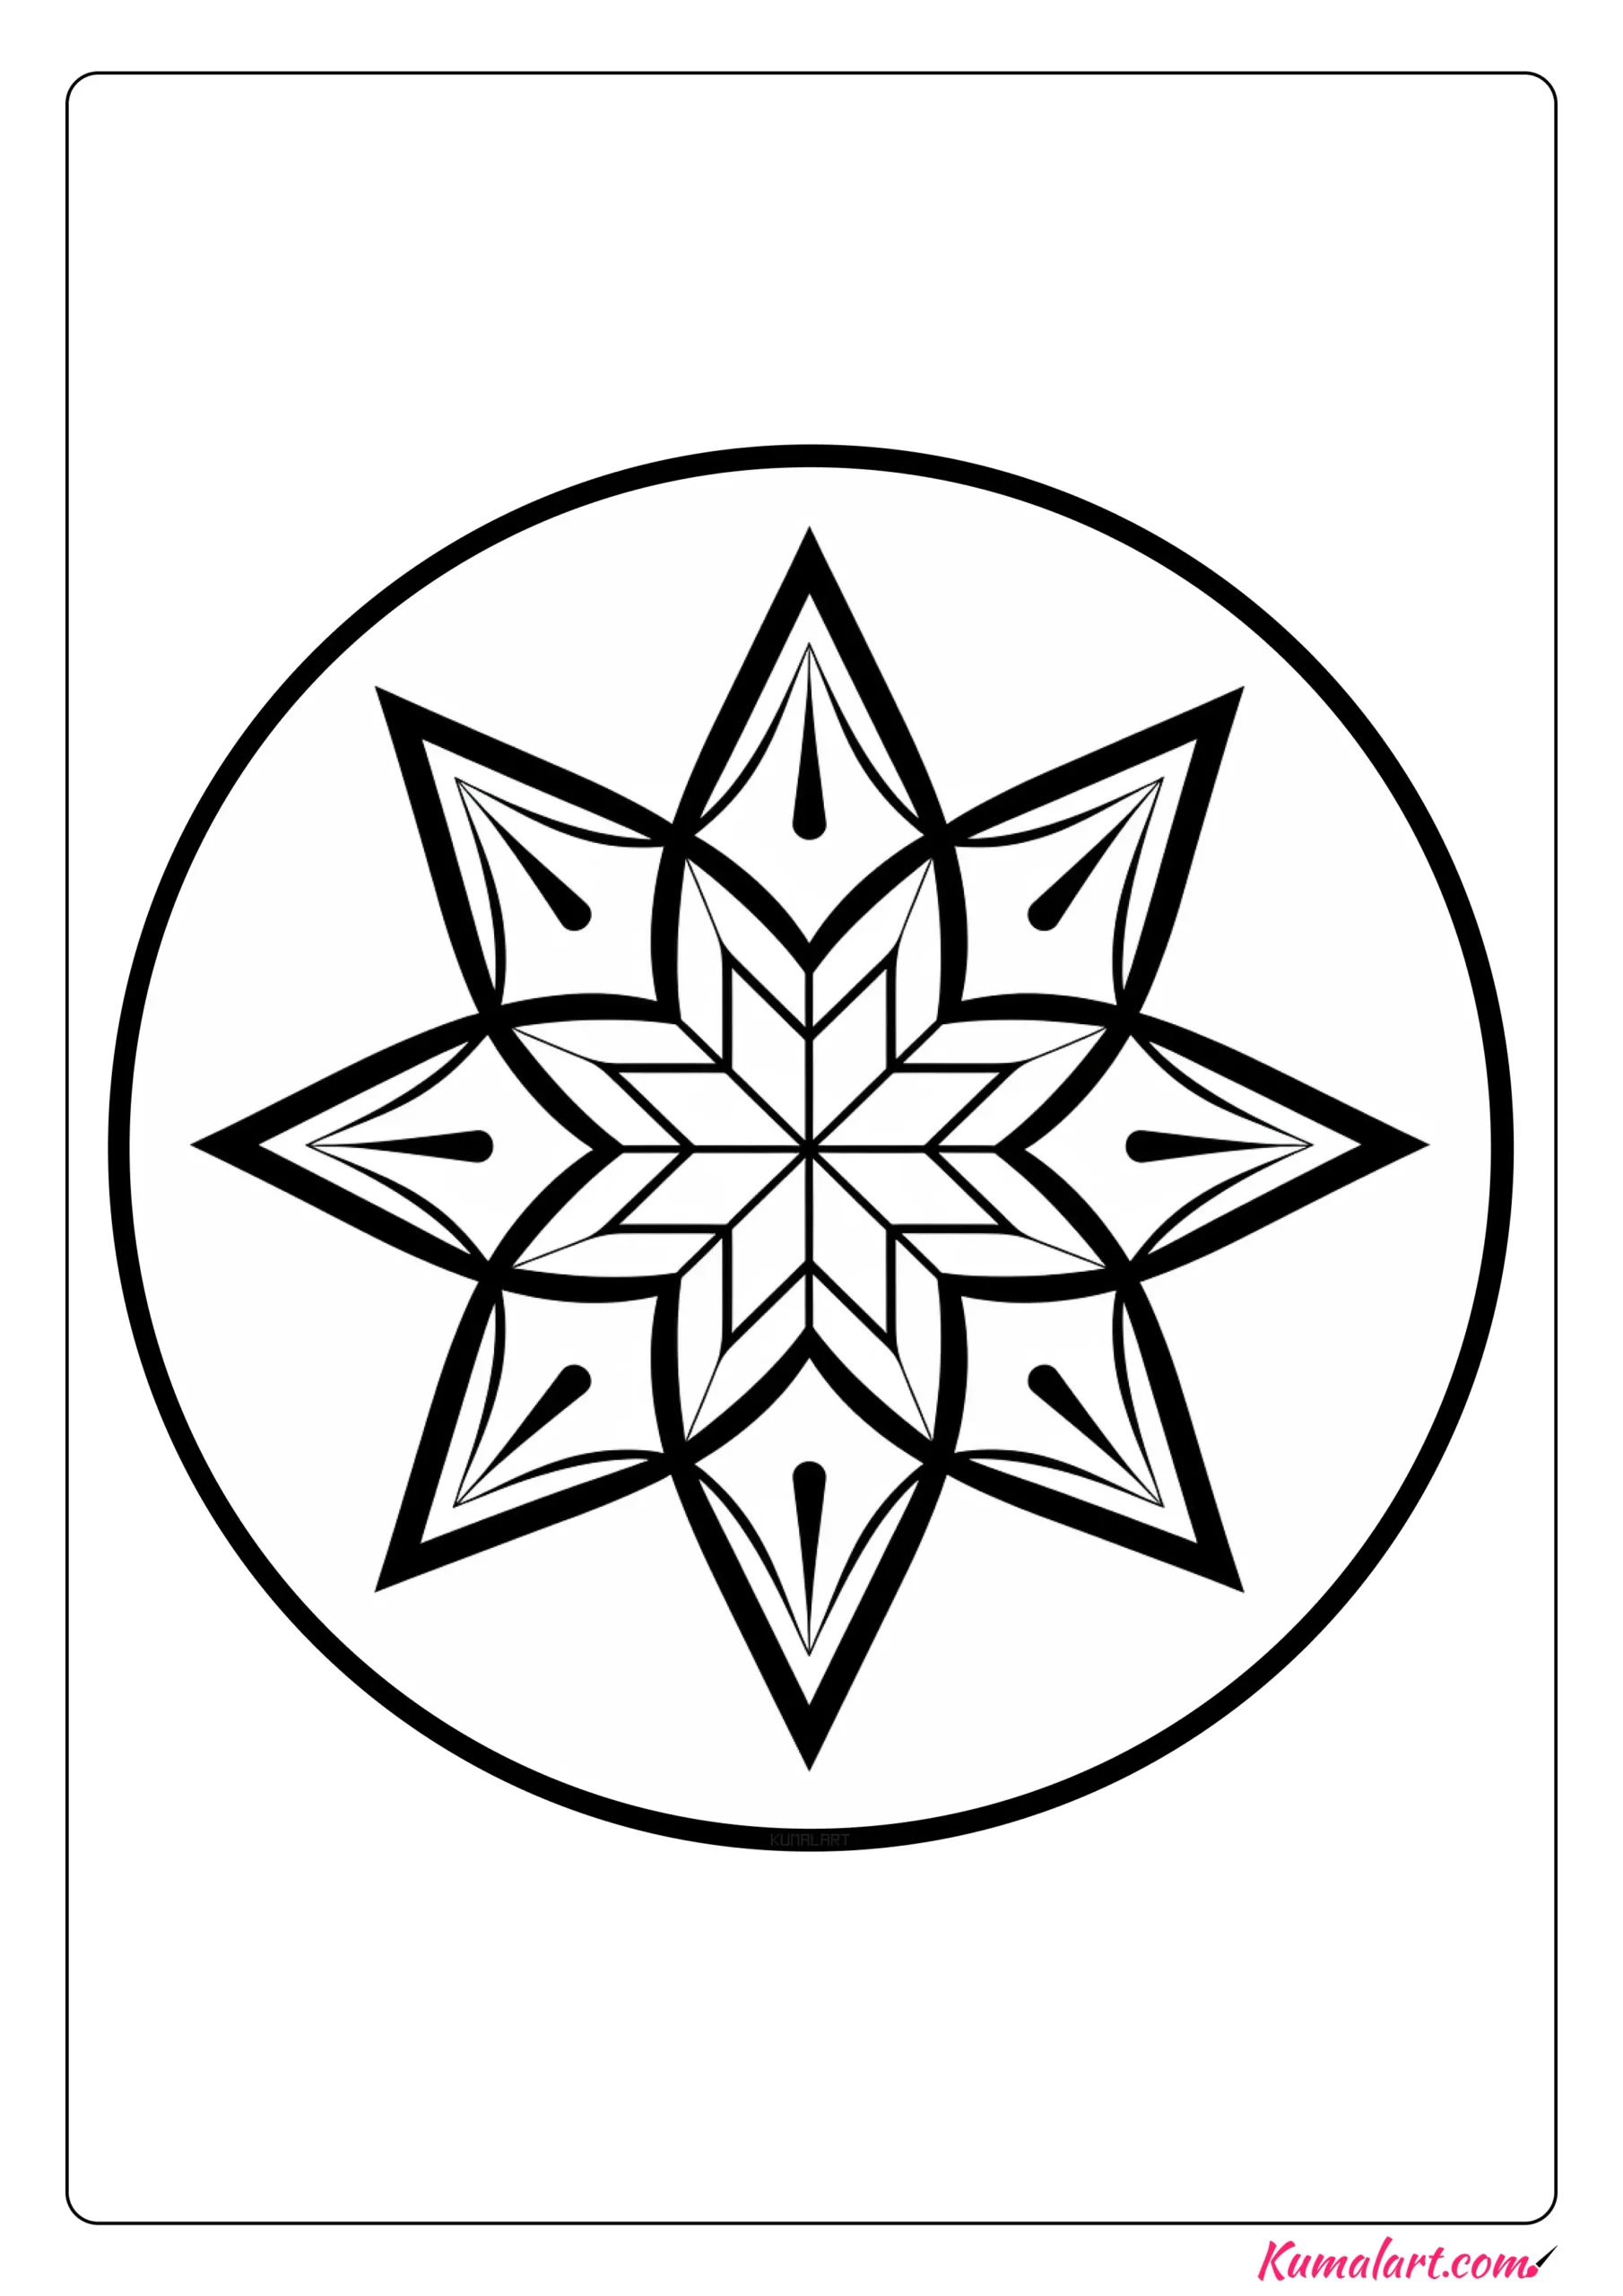 Shooting Star Mandala Coloring Page